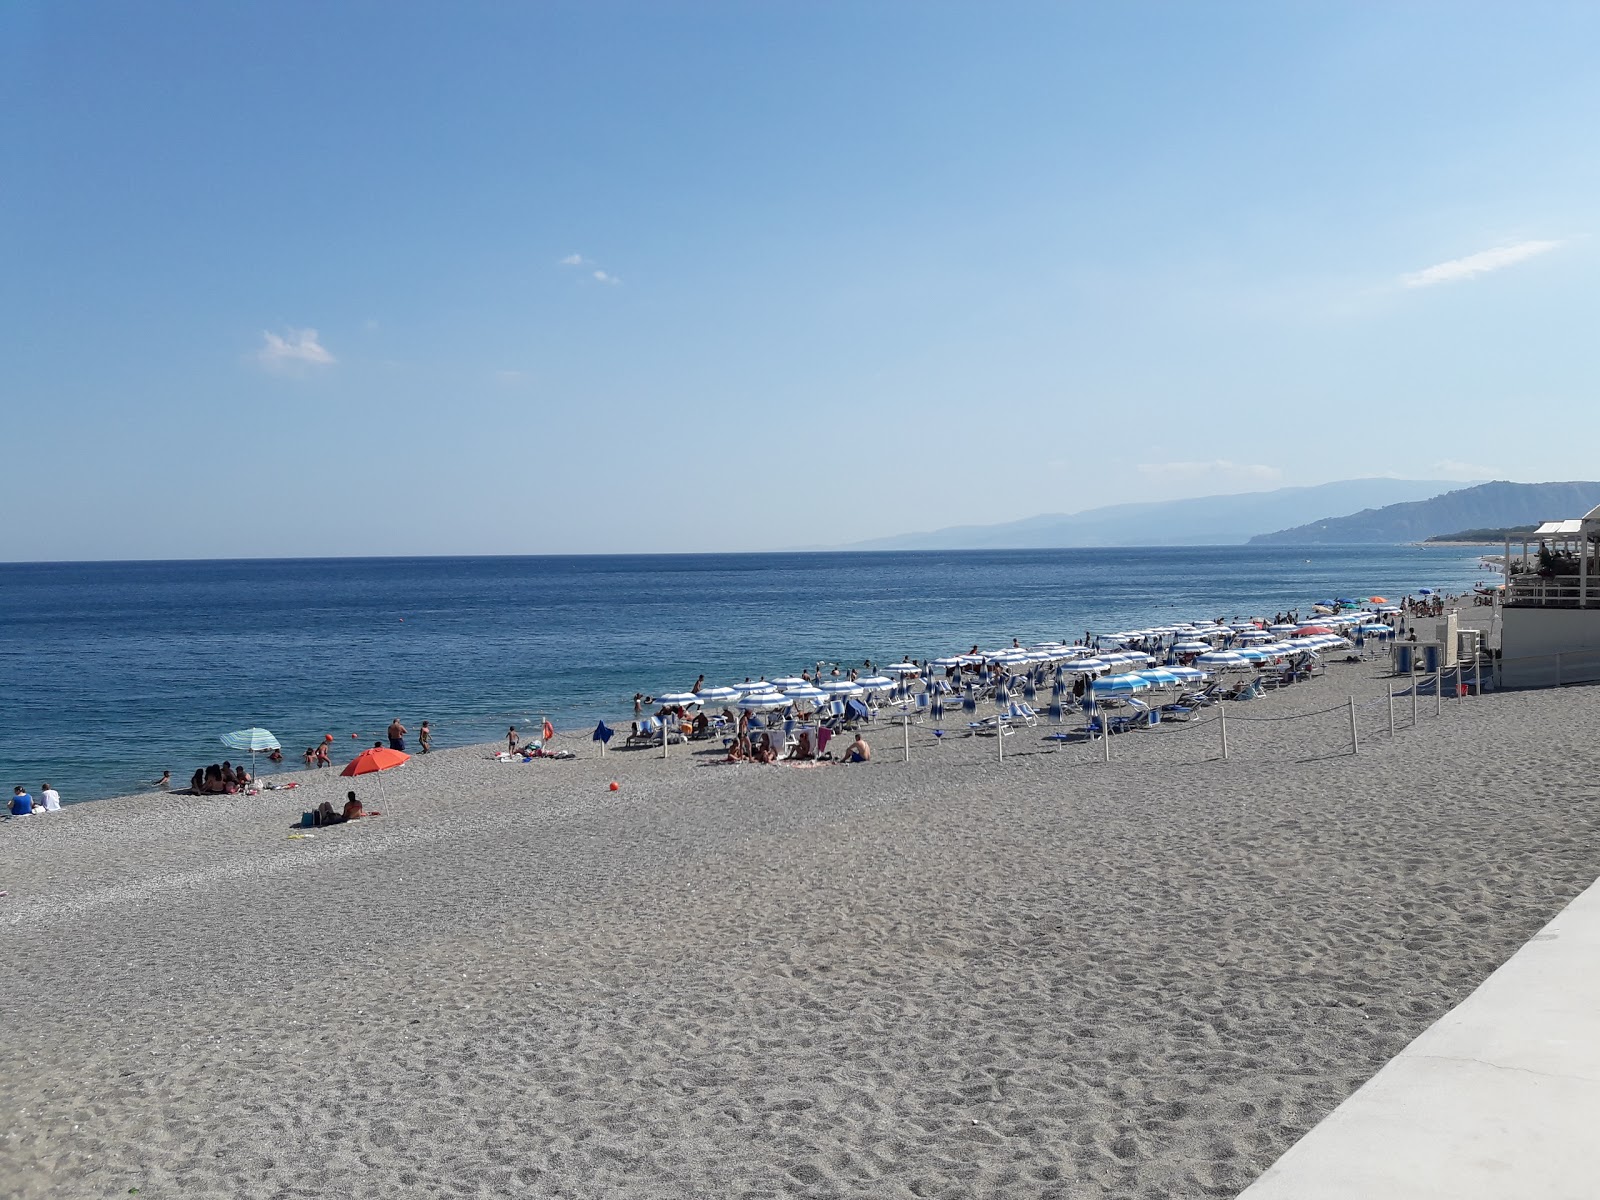 Photo de Catanzaro Lido beach - endroit populaire parmi les connaisseurs de la détente